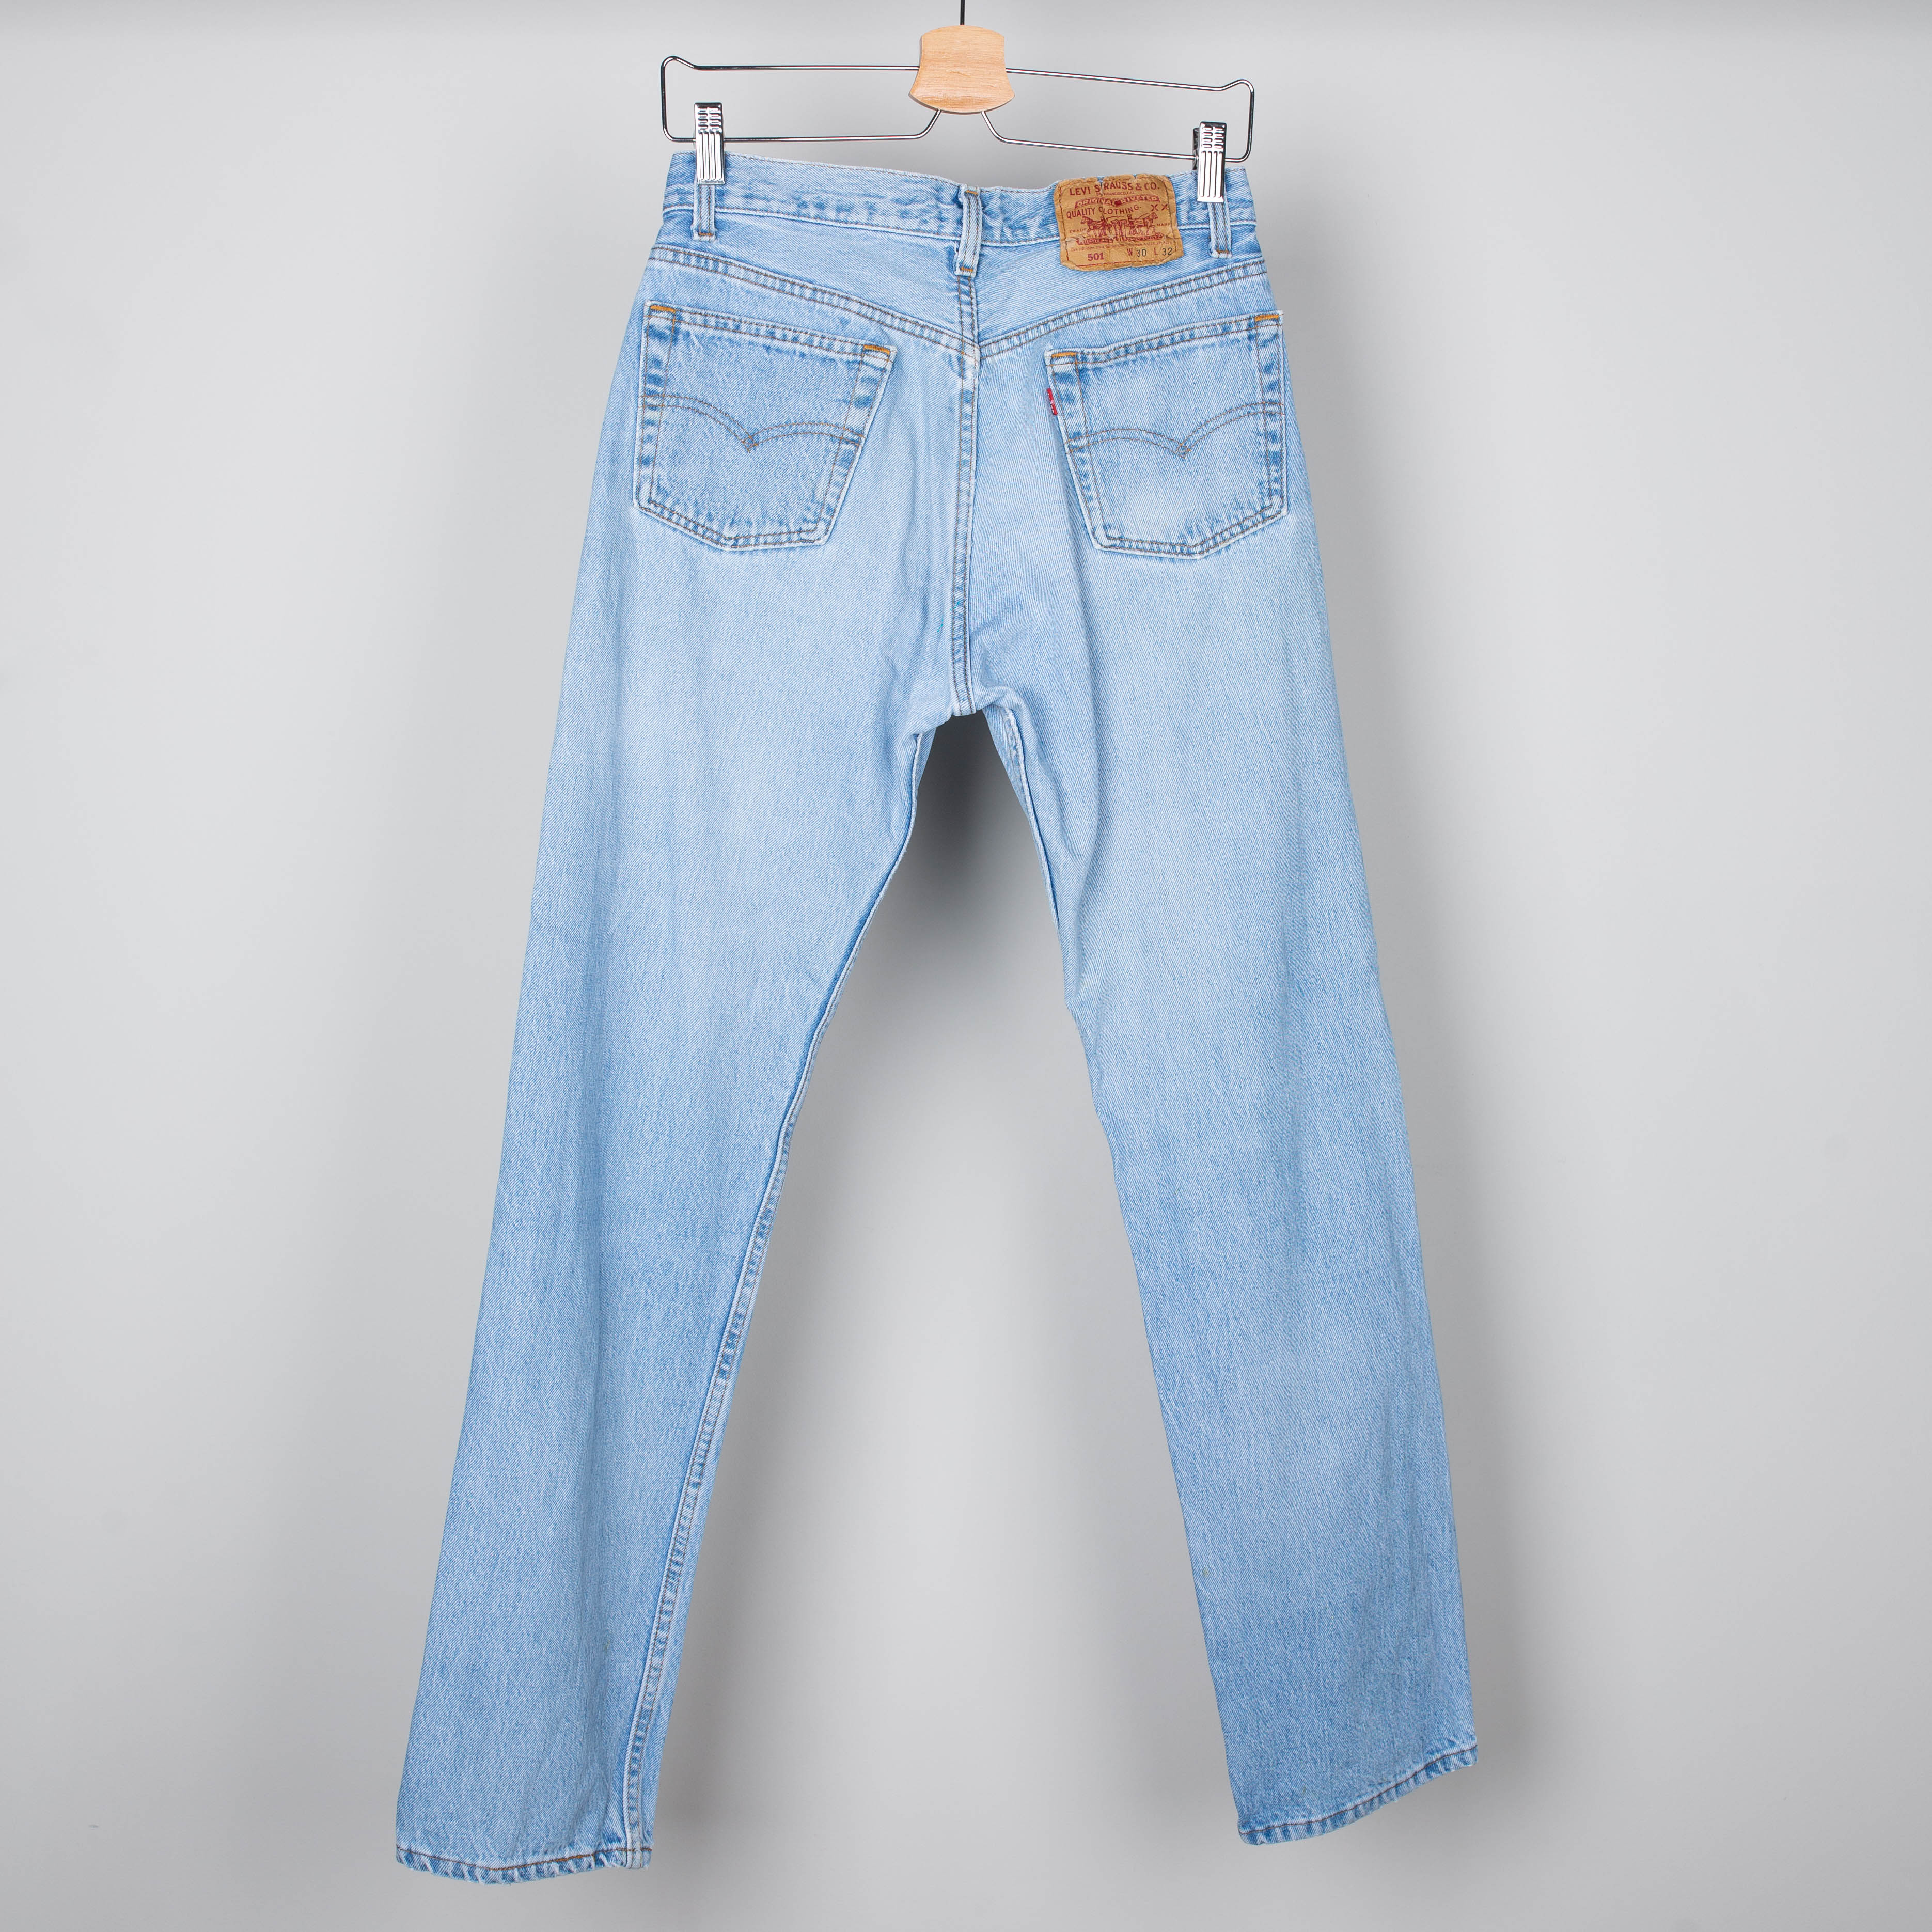 90's Levis 501 denim jeans pants Size 30